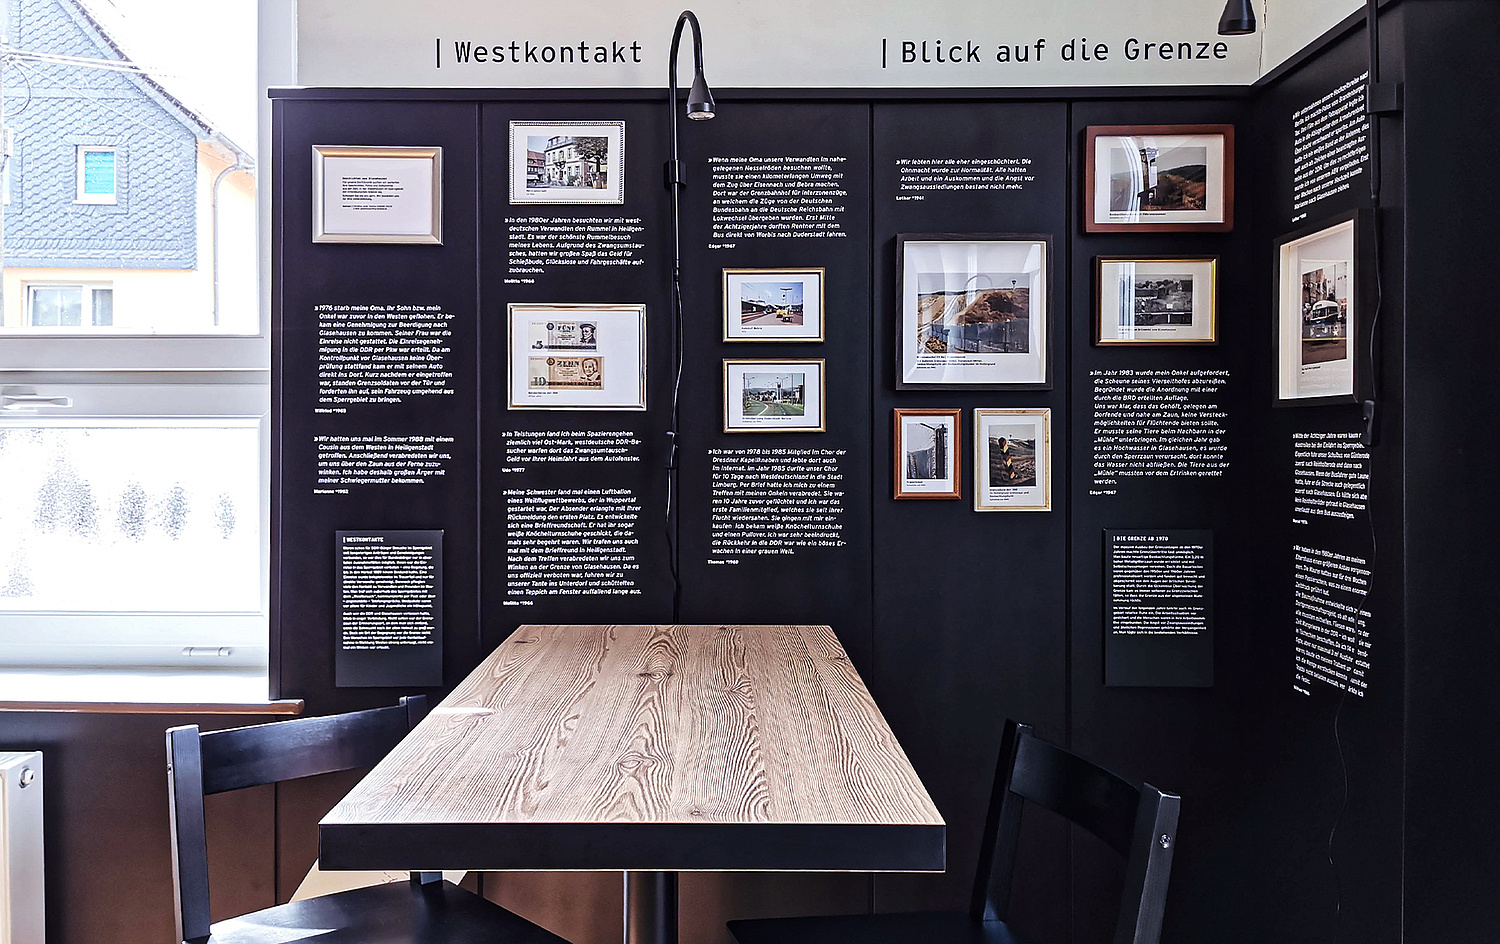 Das Bild zeigt eine Detailansicht aus der Ausstellung, hier zu den Themen "Westkontakt" und "Blick auf die Grenze". (© Papenfuss | Atelier)